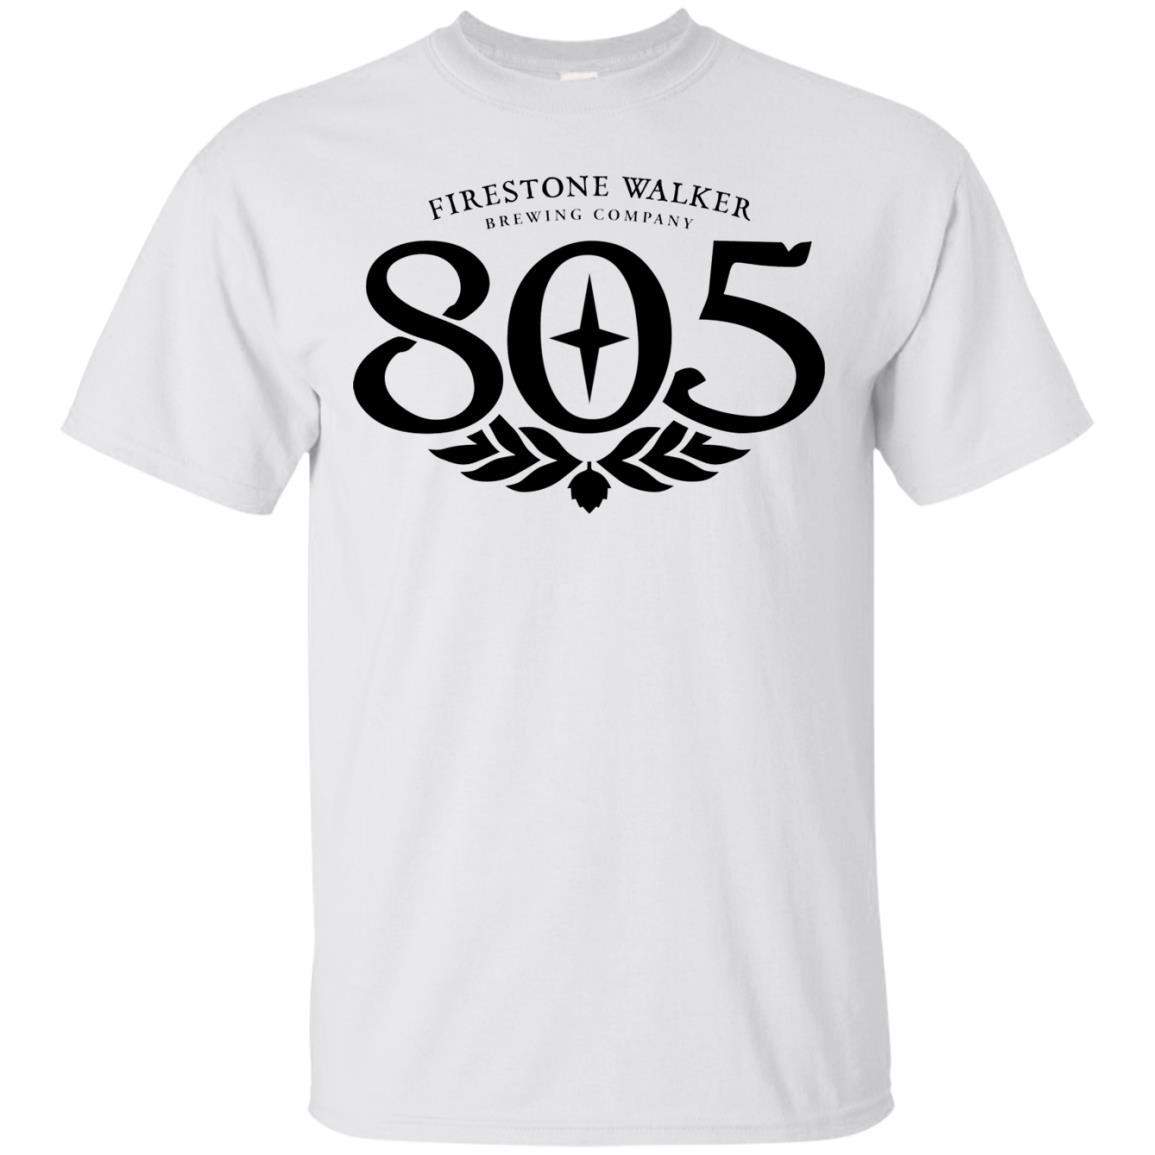 805 beer t shirt